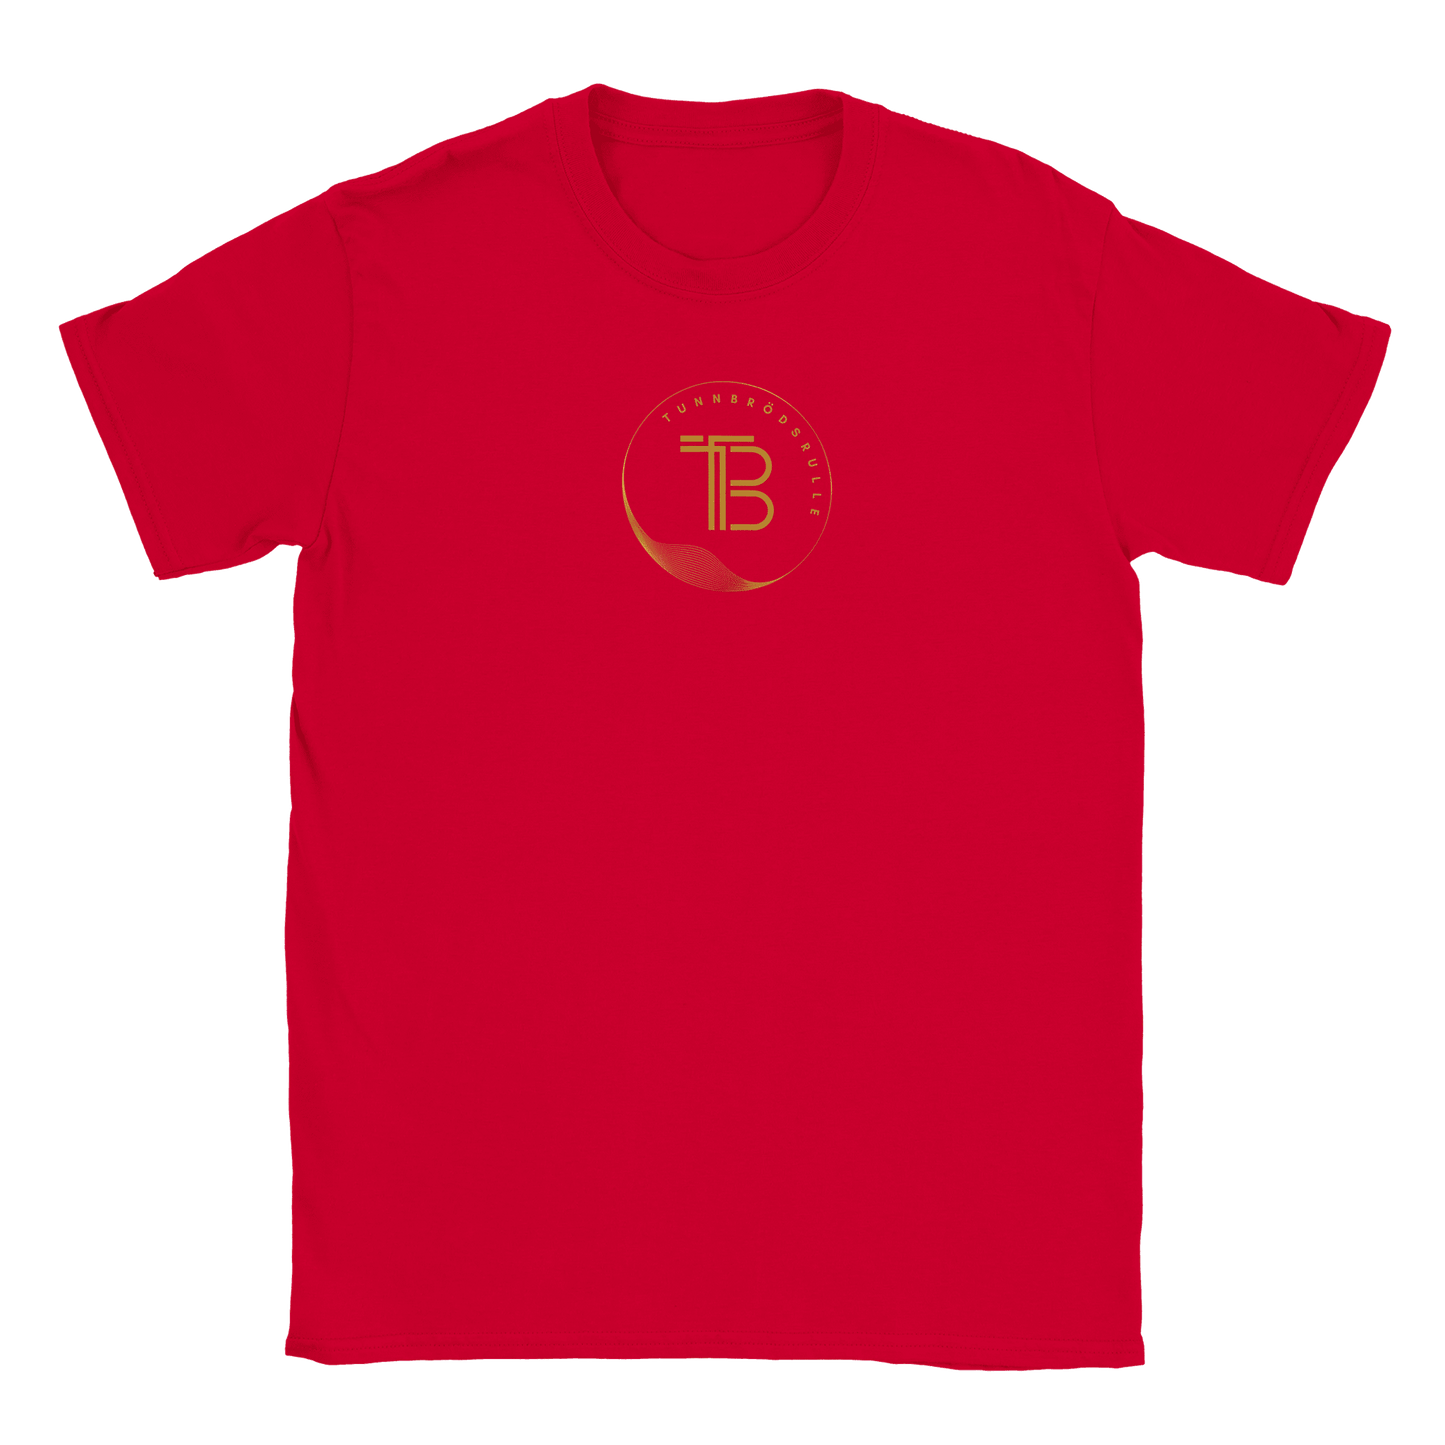 Tunnbrödsrulle - T-shirt Röd